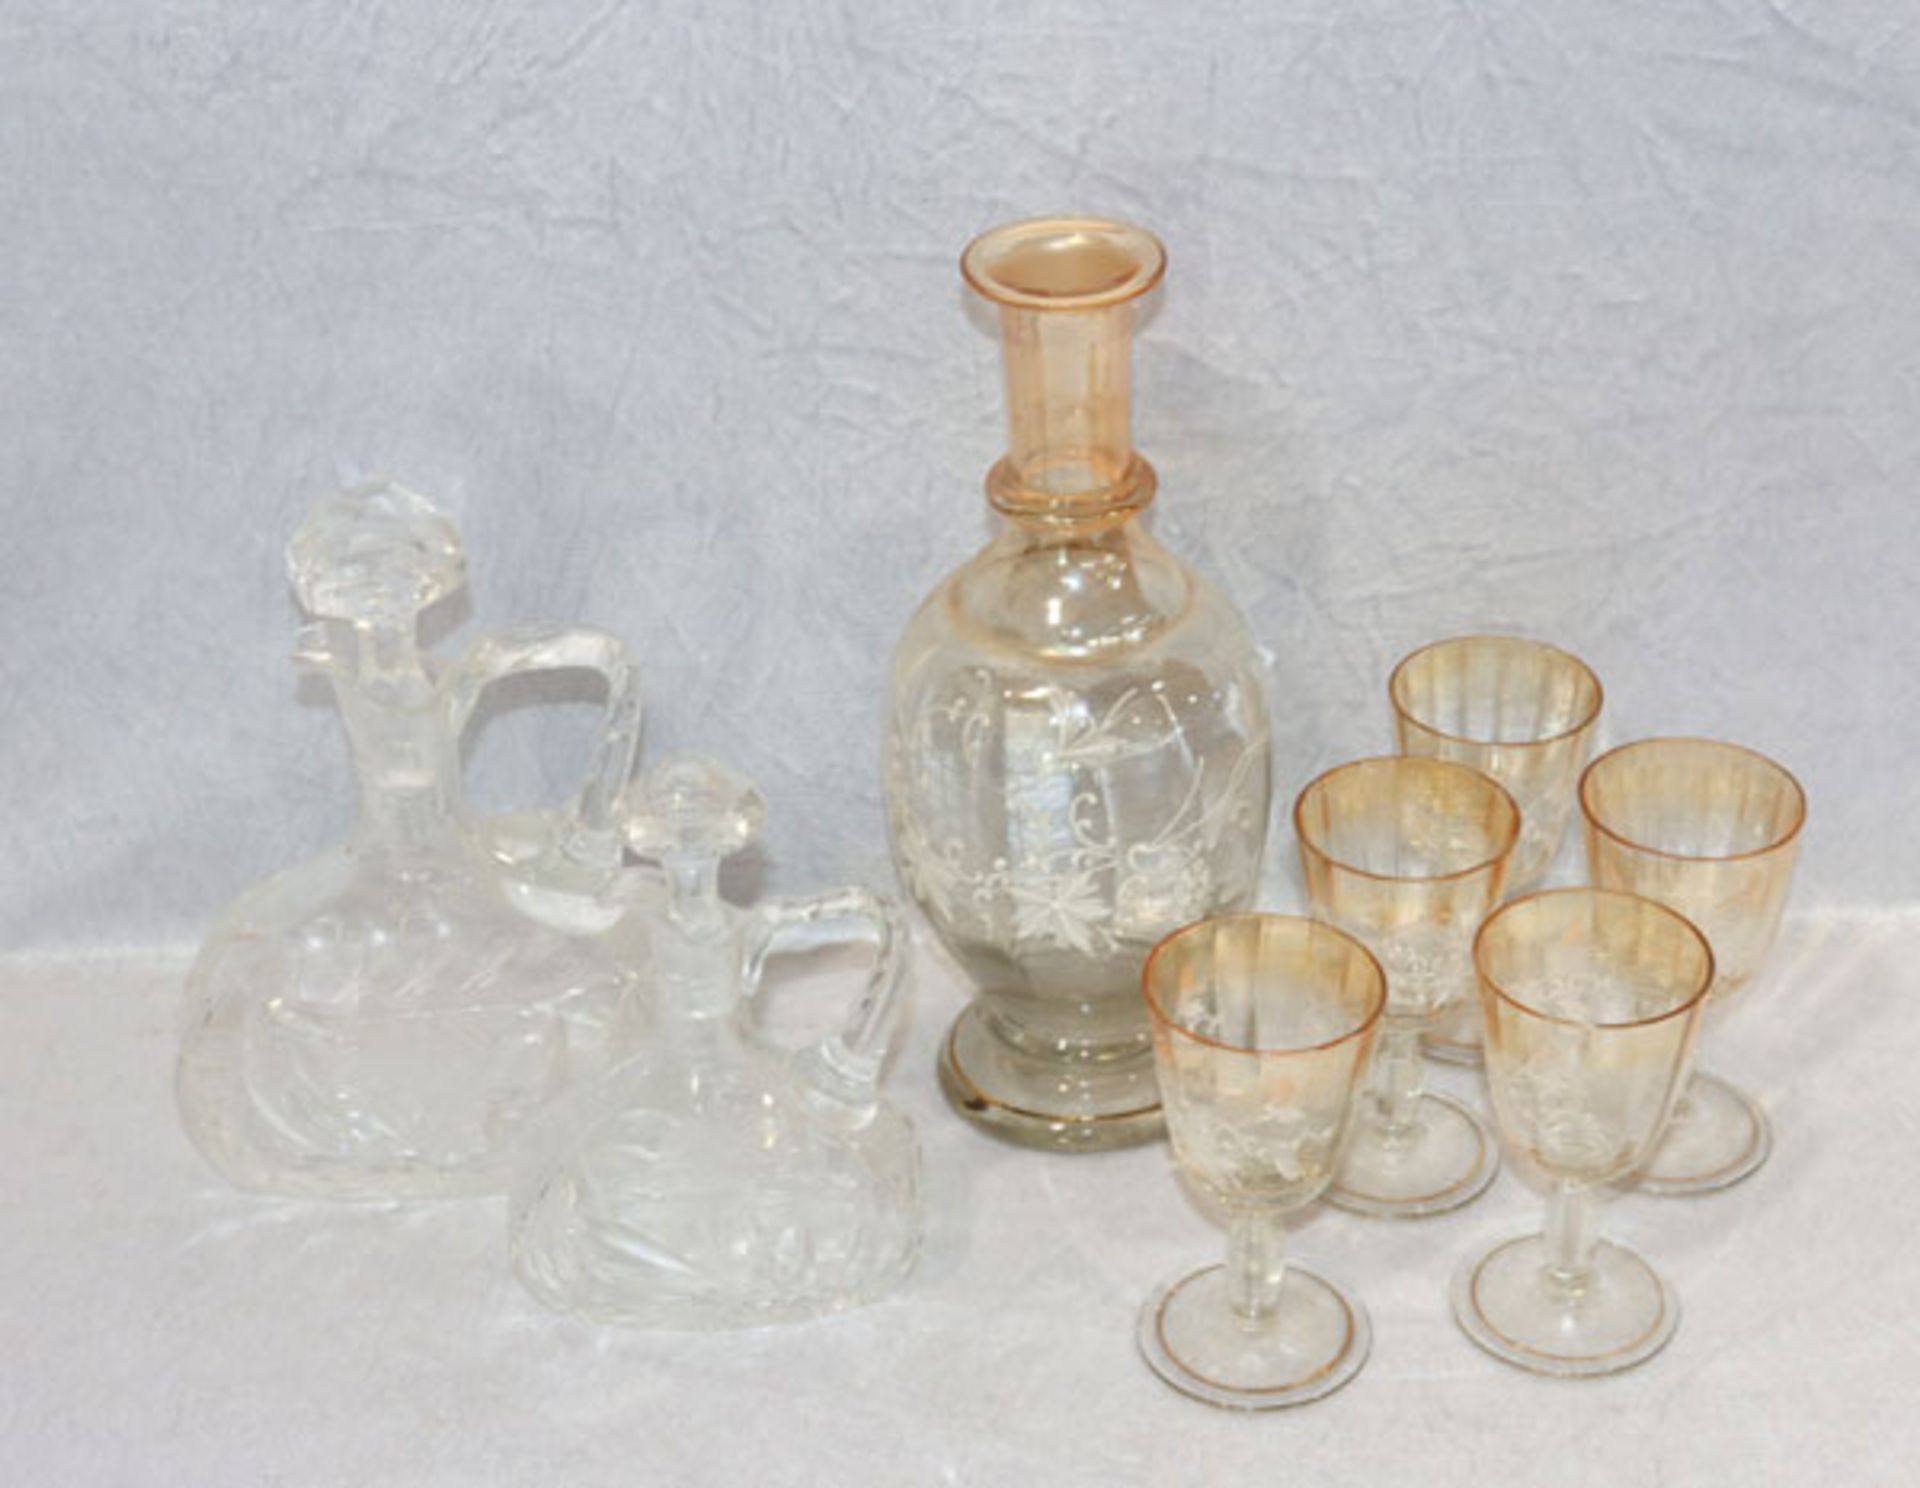 Glas-Konvolut: 2 Henkelkaraffen mit Schliffdekor, H 18/23 cm, Karaffe, Stöpsel fehlt, und 5 passende